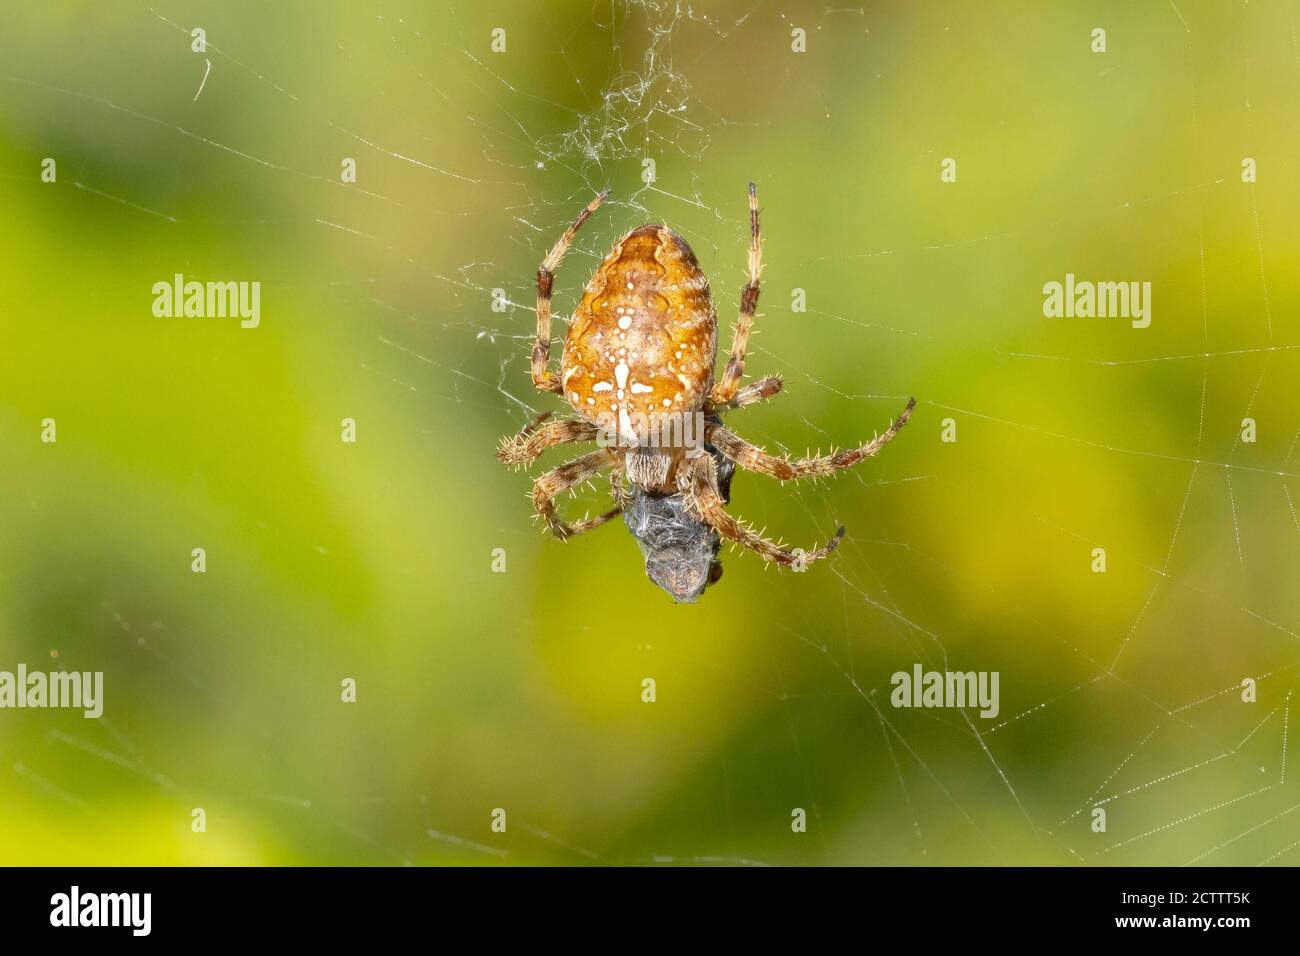 Primo piano di un ragno a croce, araneus diadematus, mangiando una preda catturata in una rete. Foto Stock